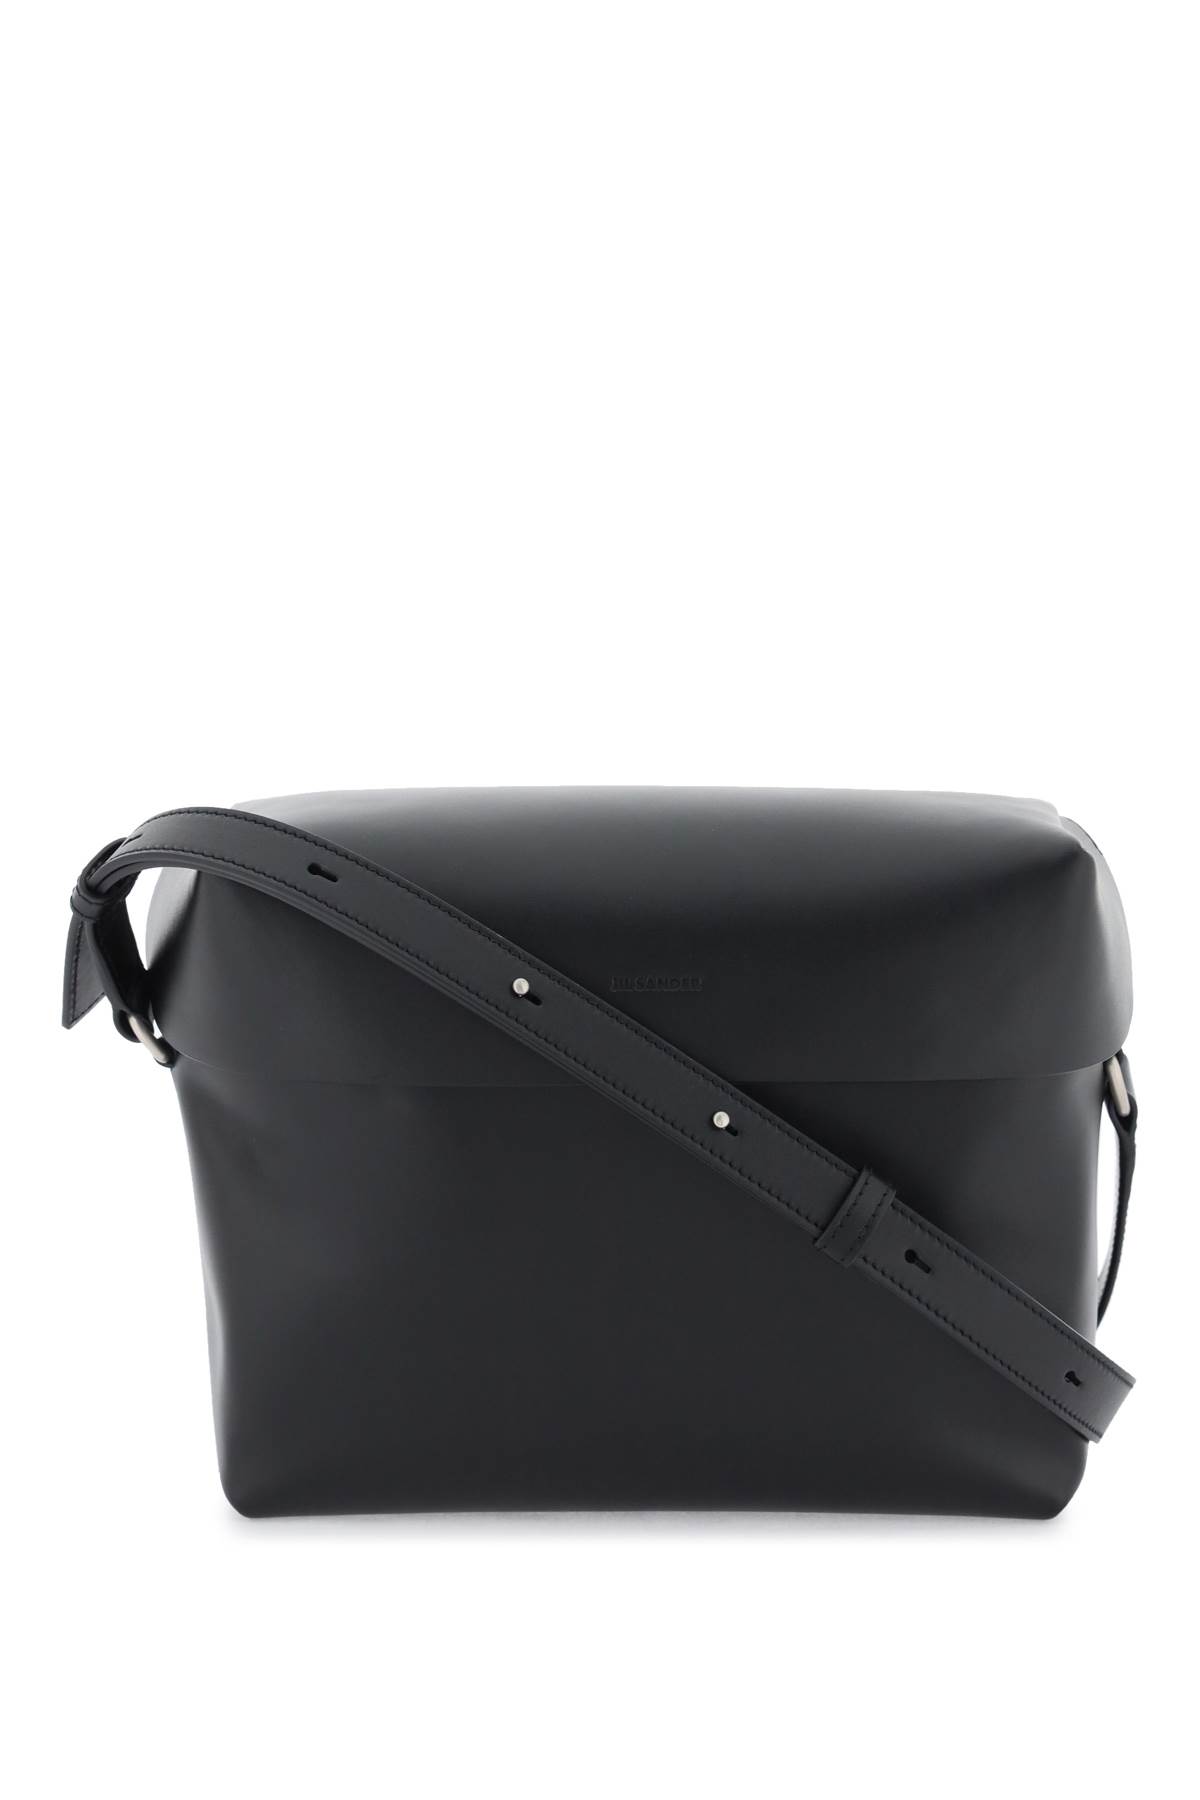 Jil Sander Leather Crossbody Bag In 001 Black